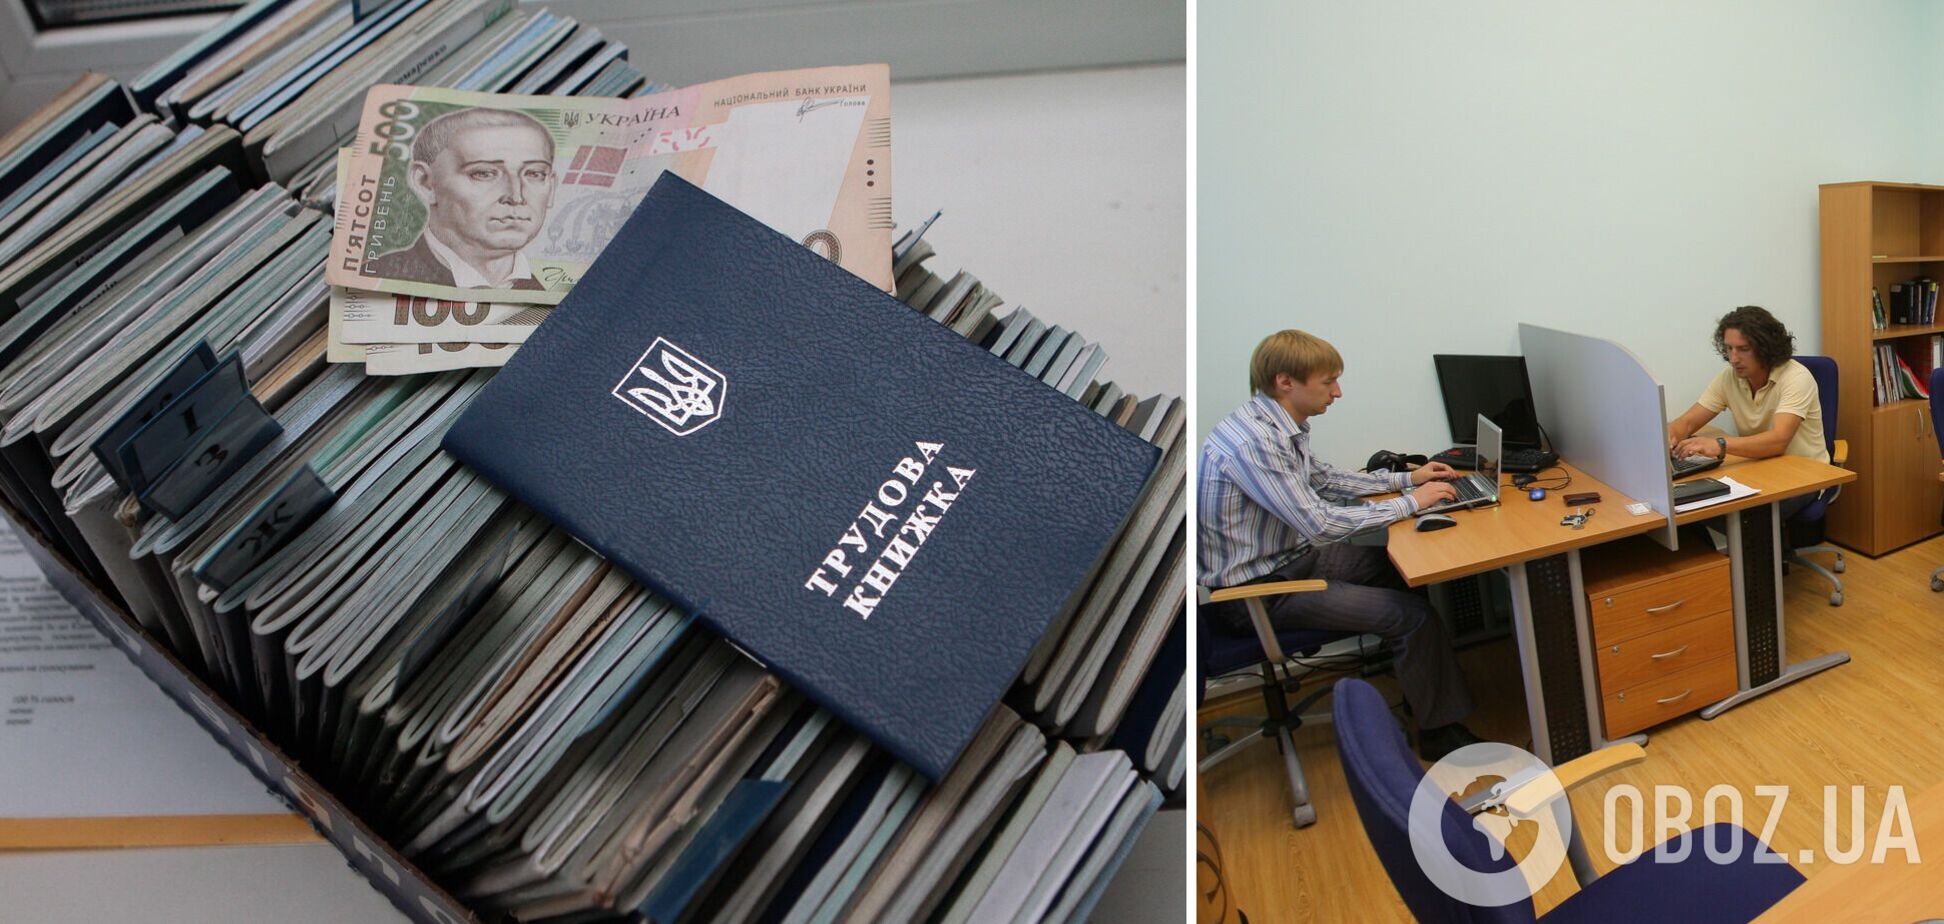 Из-за войны почти 60% украинских компаний сократили сотрудников